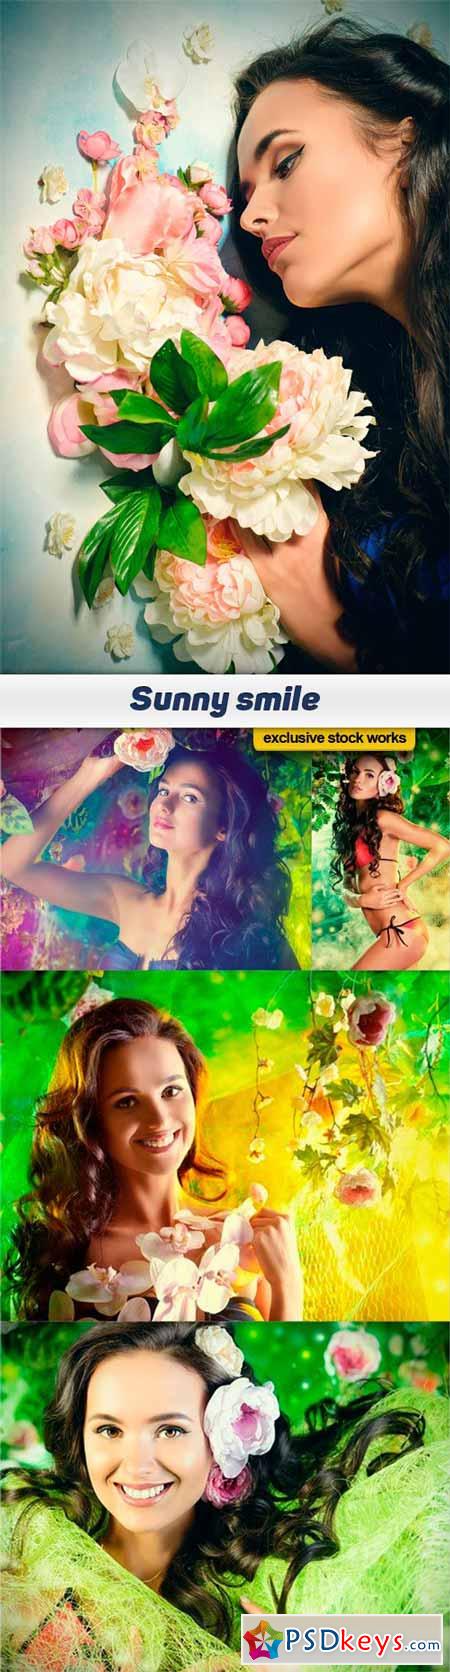 Sunny smile - 5 UHQ JPEG